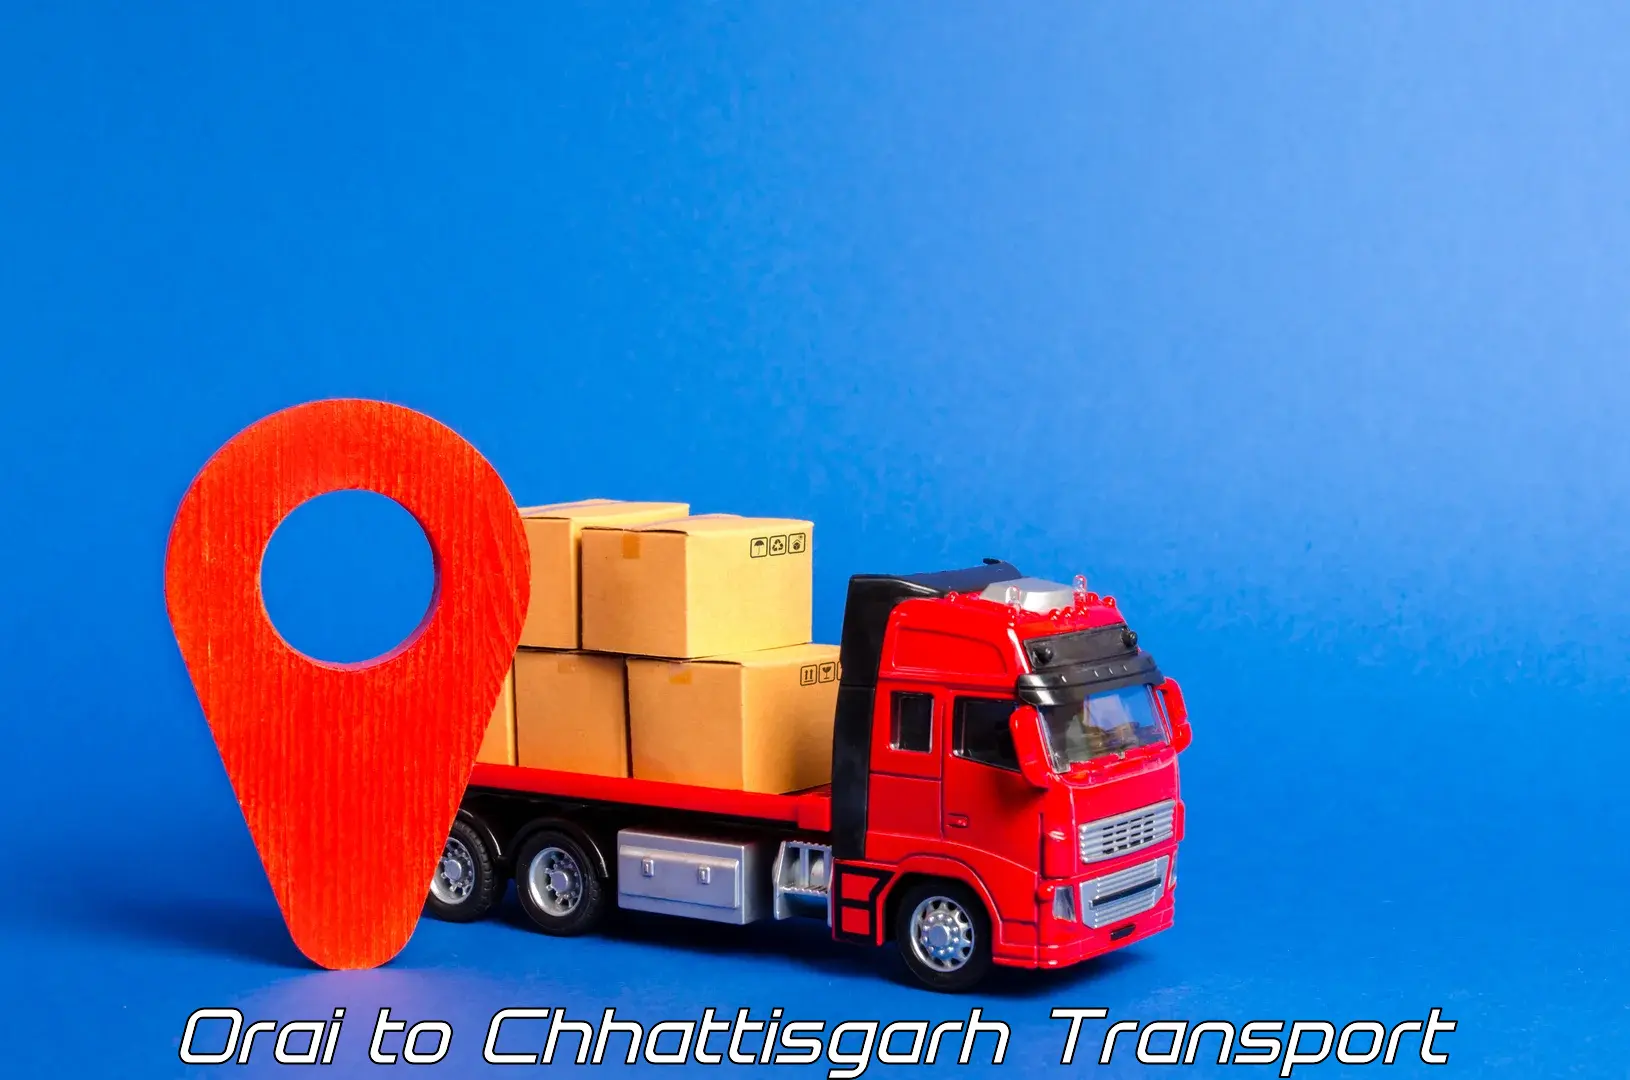 Container transport service Orai to Chhattisgarh